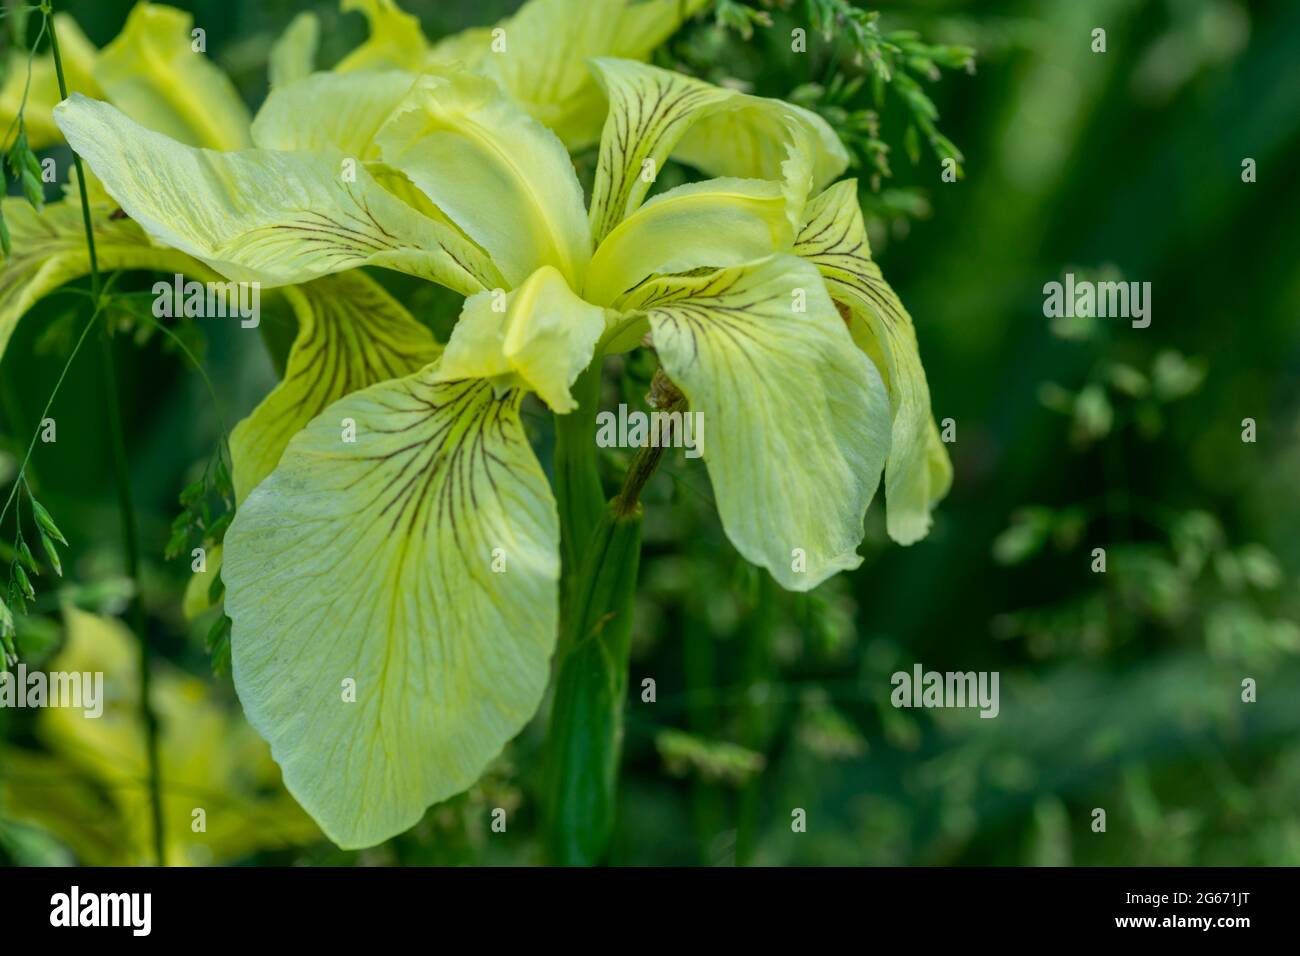 Yellow flag Iris Stock Photo